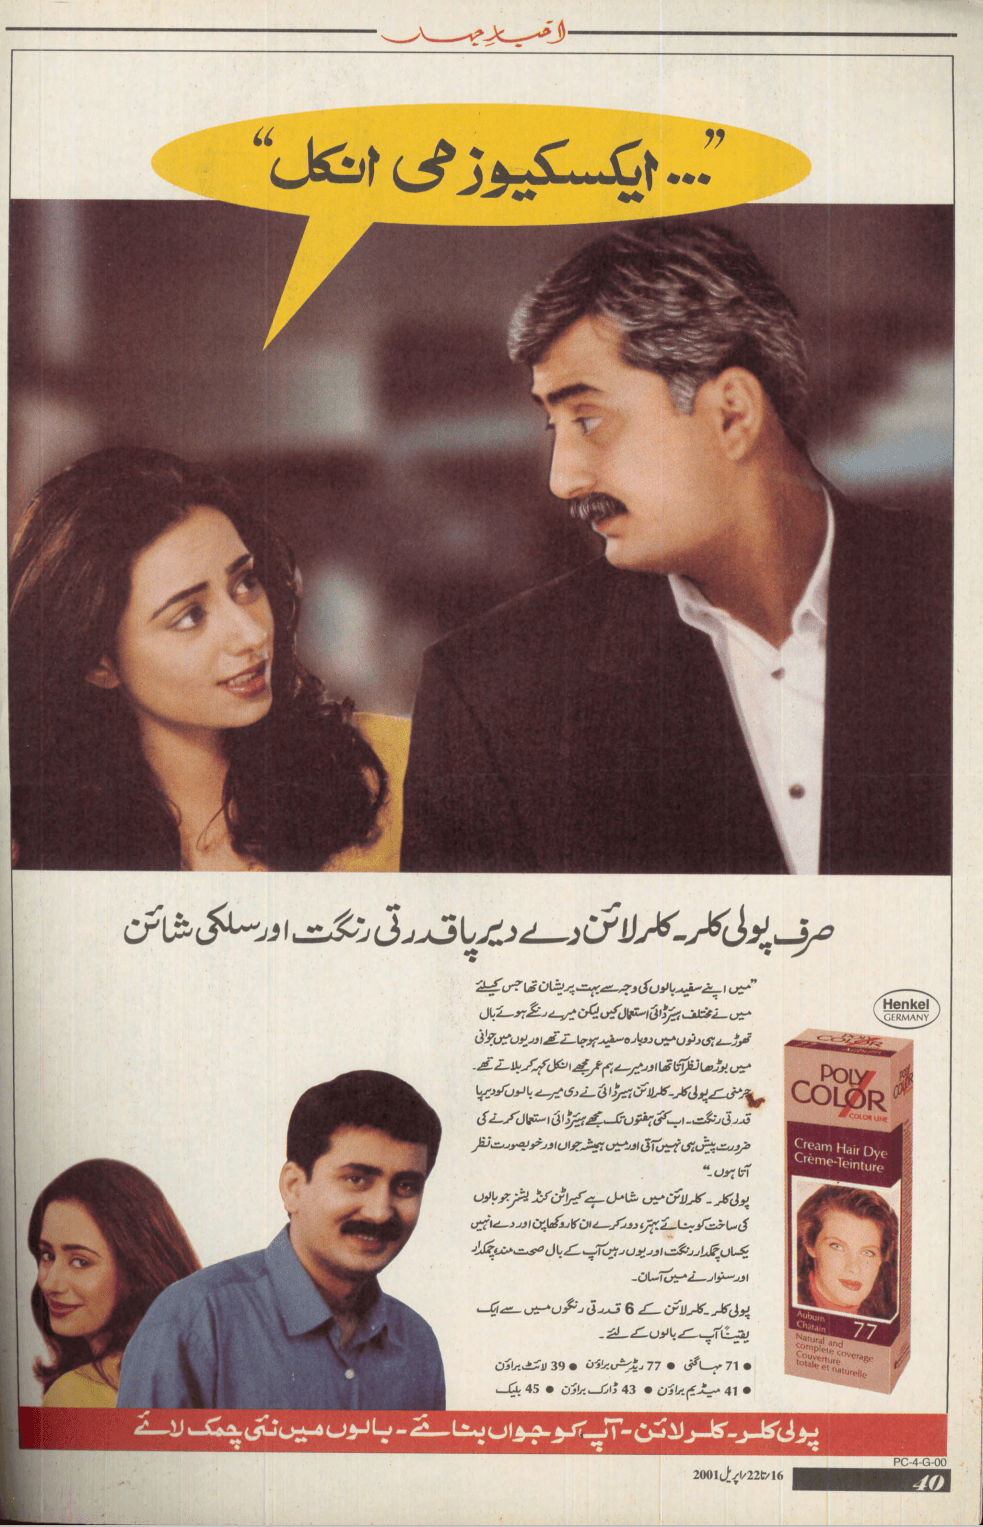 Akhbar-e-Jahan (April 16, 2001) - KHAJISTAN™